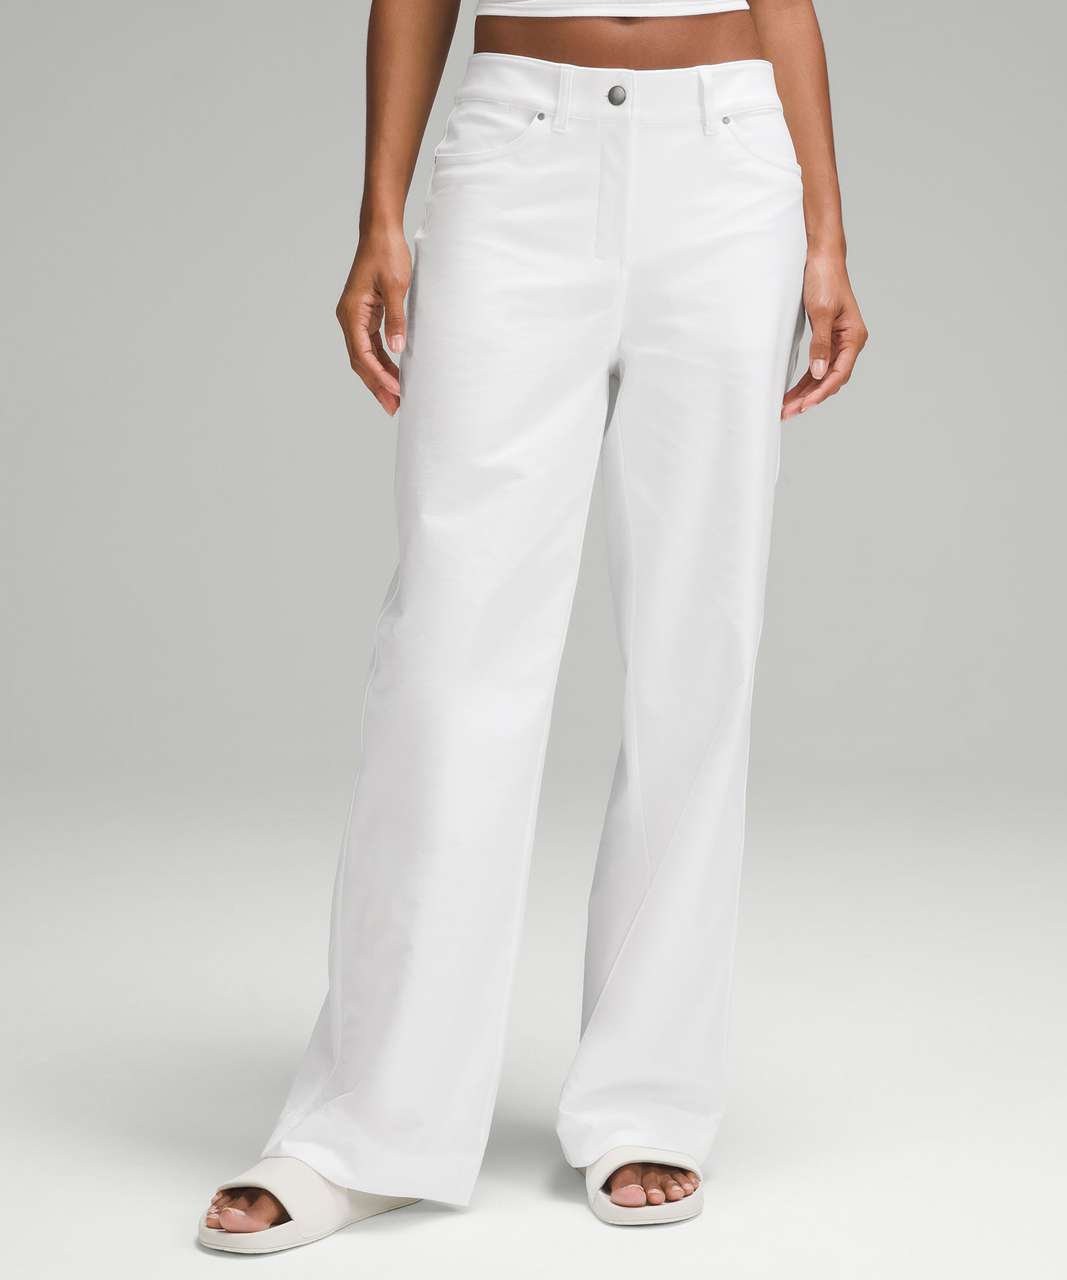 Lululemon City Sleek 5 Pocket High-Rise Wide-Leg Pant Full Length *Light Utilitech - White